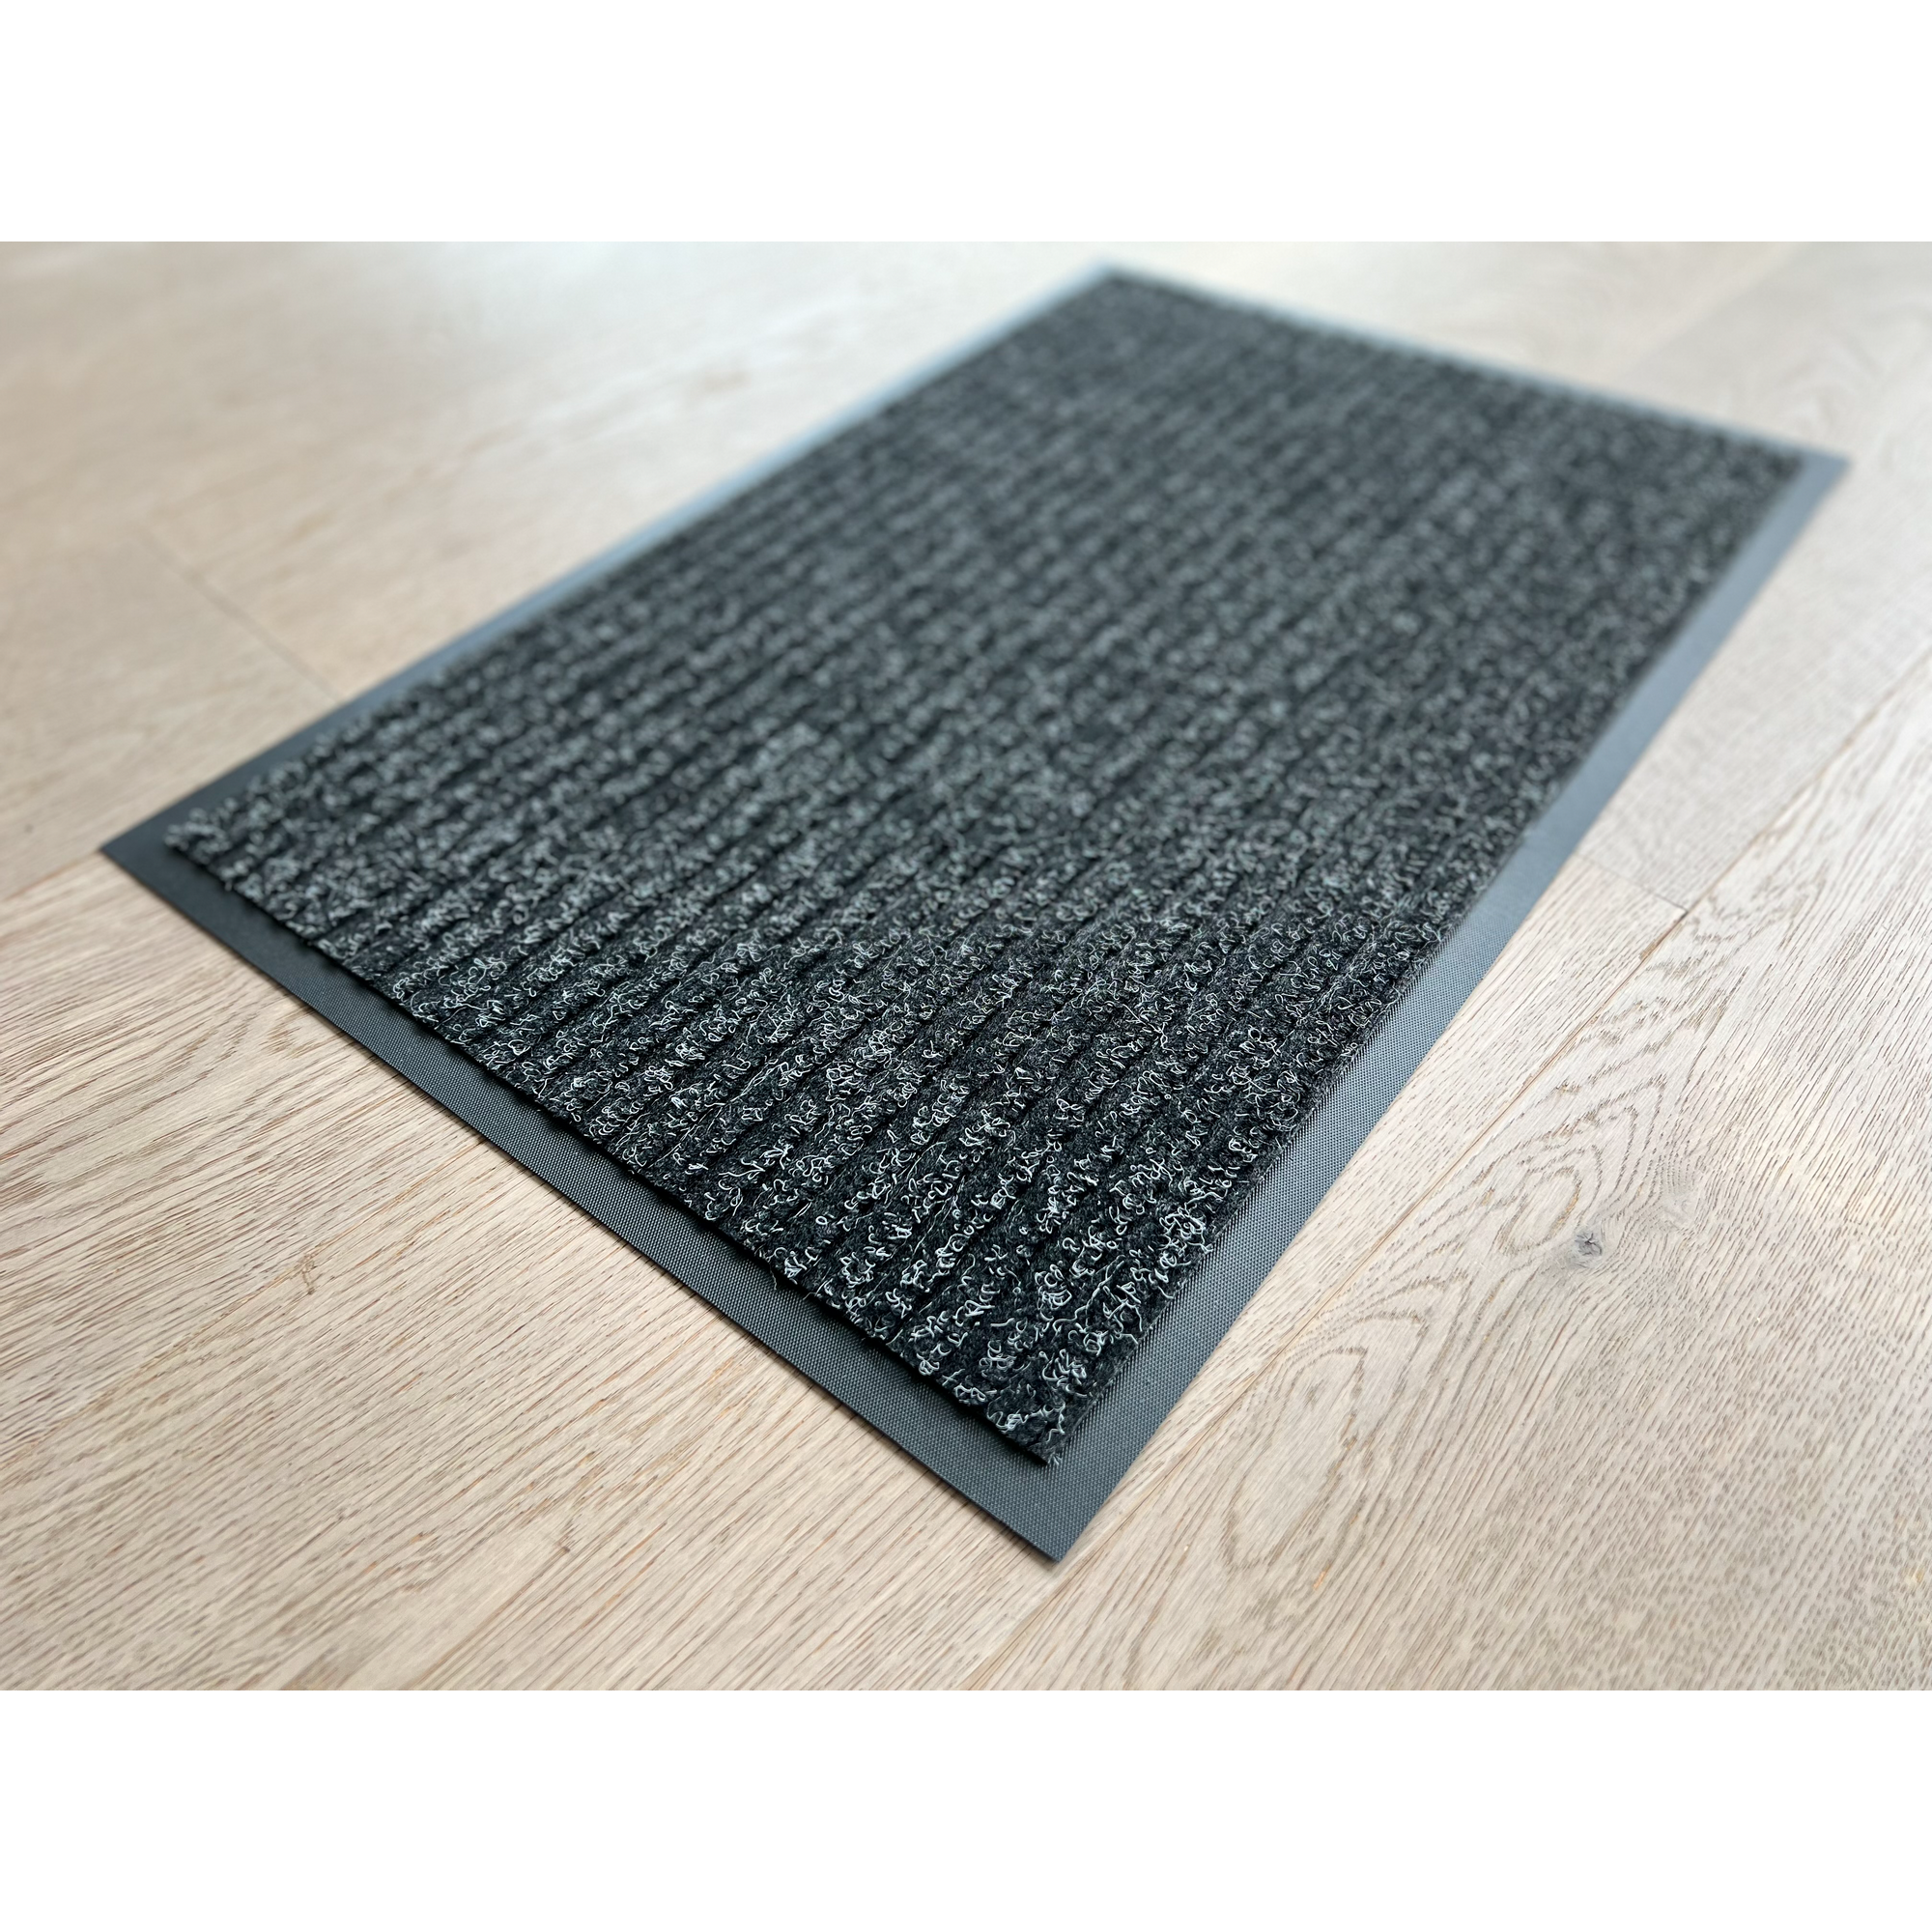 Fußmatten-Set 'Solid' 40 x 60 cm anthrazit 10-teilig + product picture